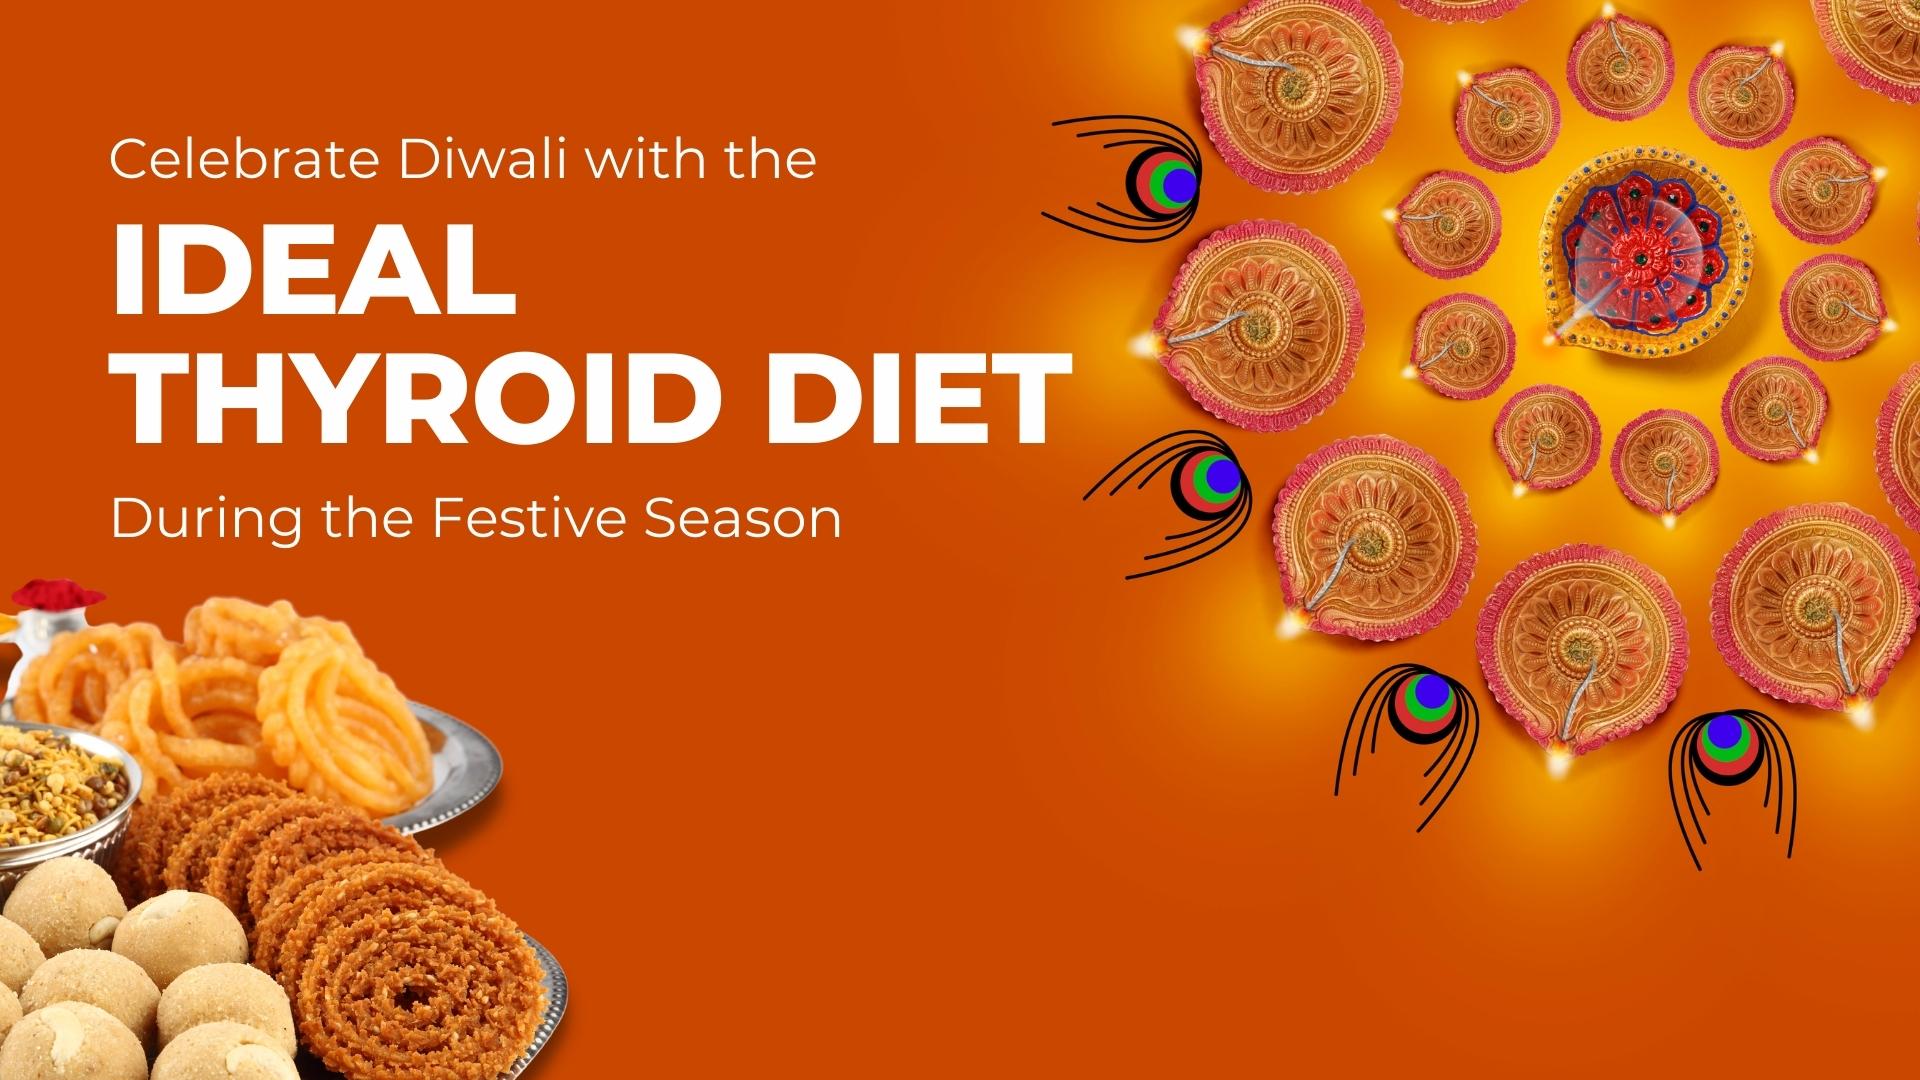 Thyroid Diet during the Festive Season